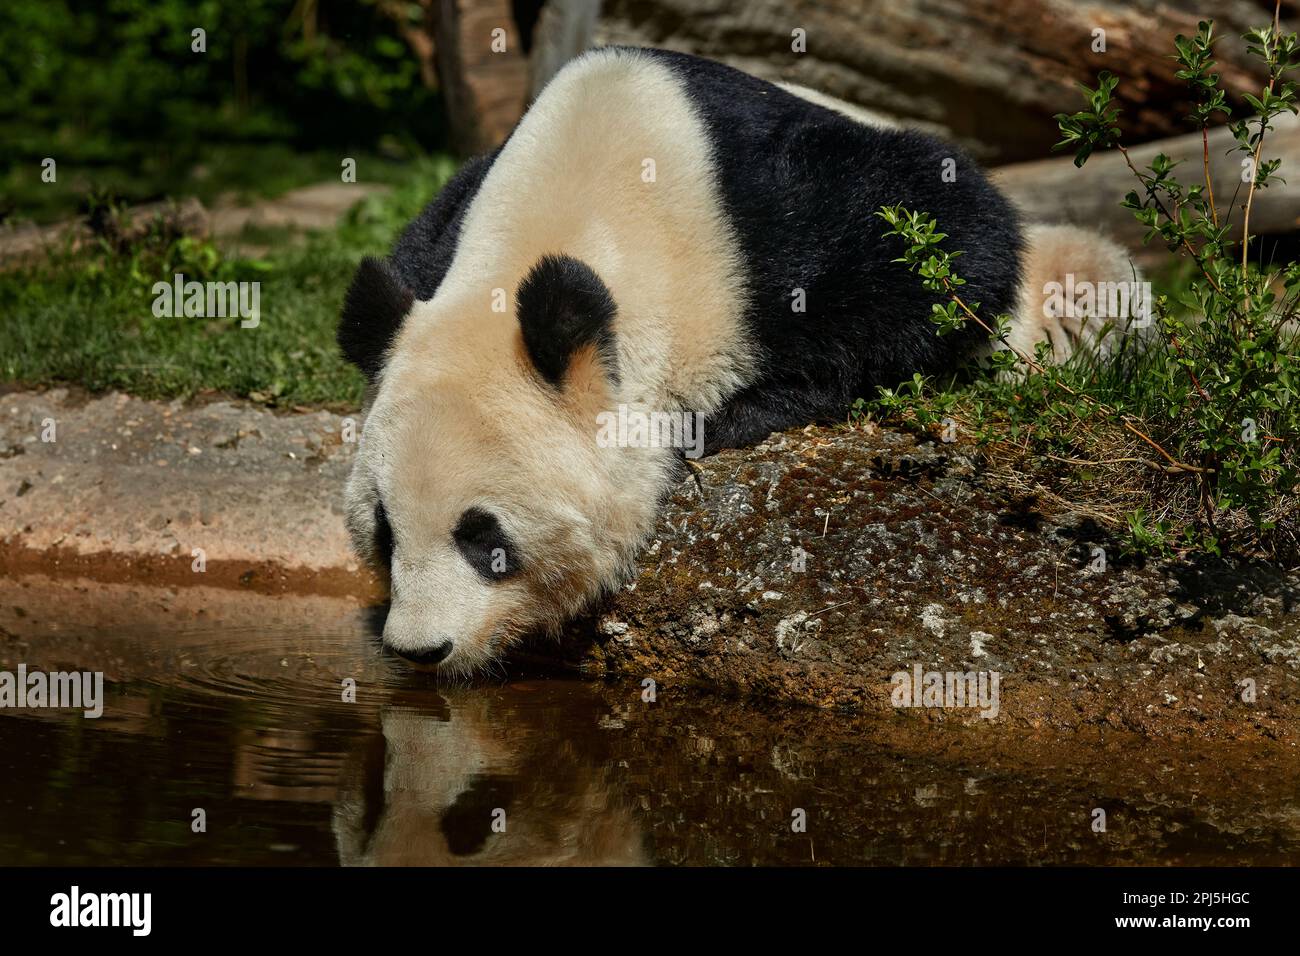 Comportamiento del oso panda en el hábitat natural. Retrato de Panda Gigante, Ailuropoda melanoleuca, alimentándose sobre el árbol de bambú en vegetación verde. Detalle del portra Foto de stock